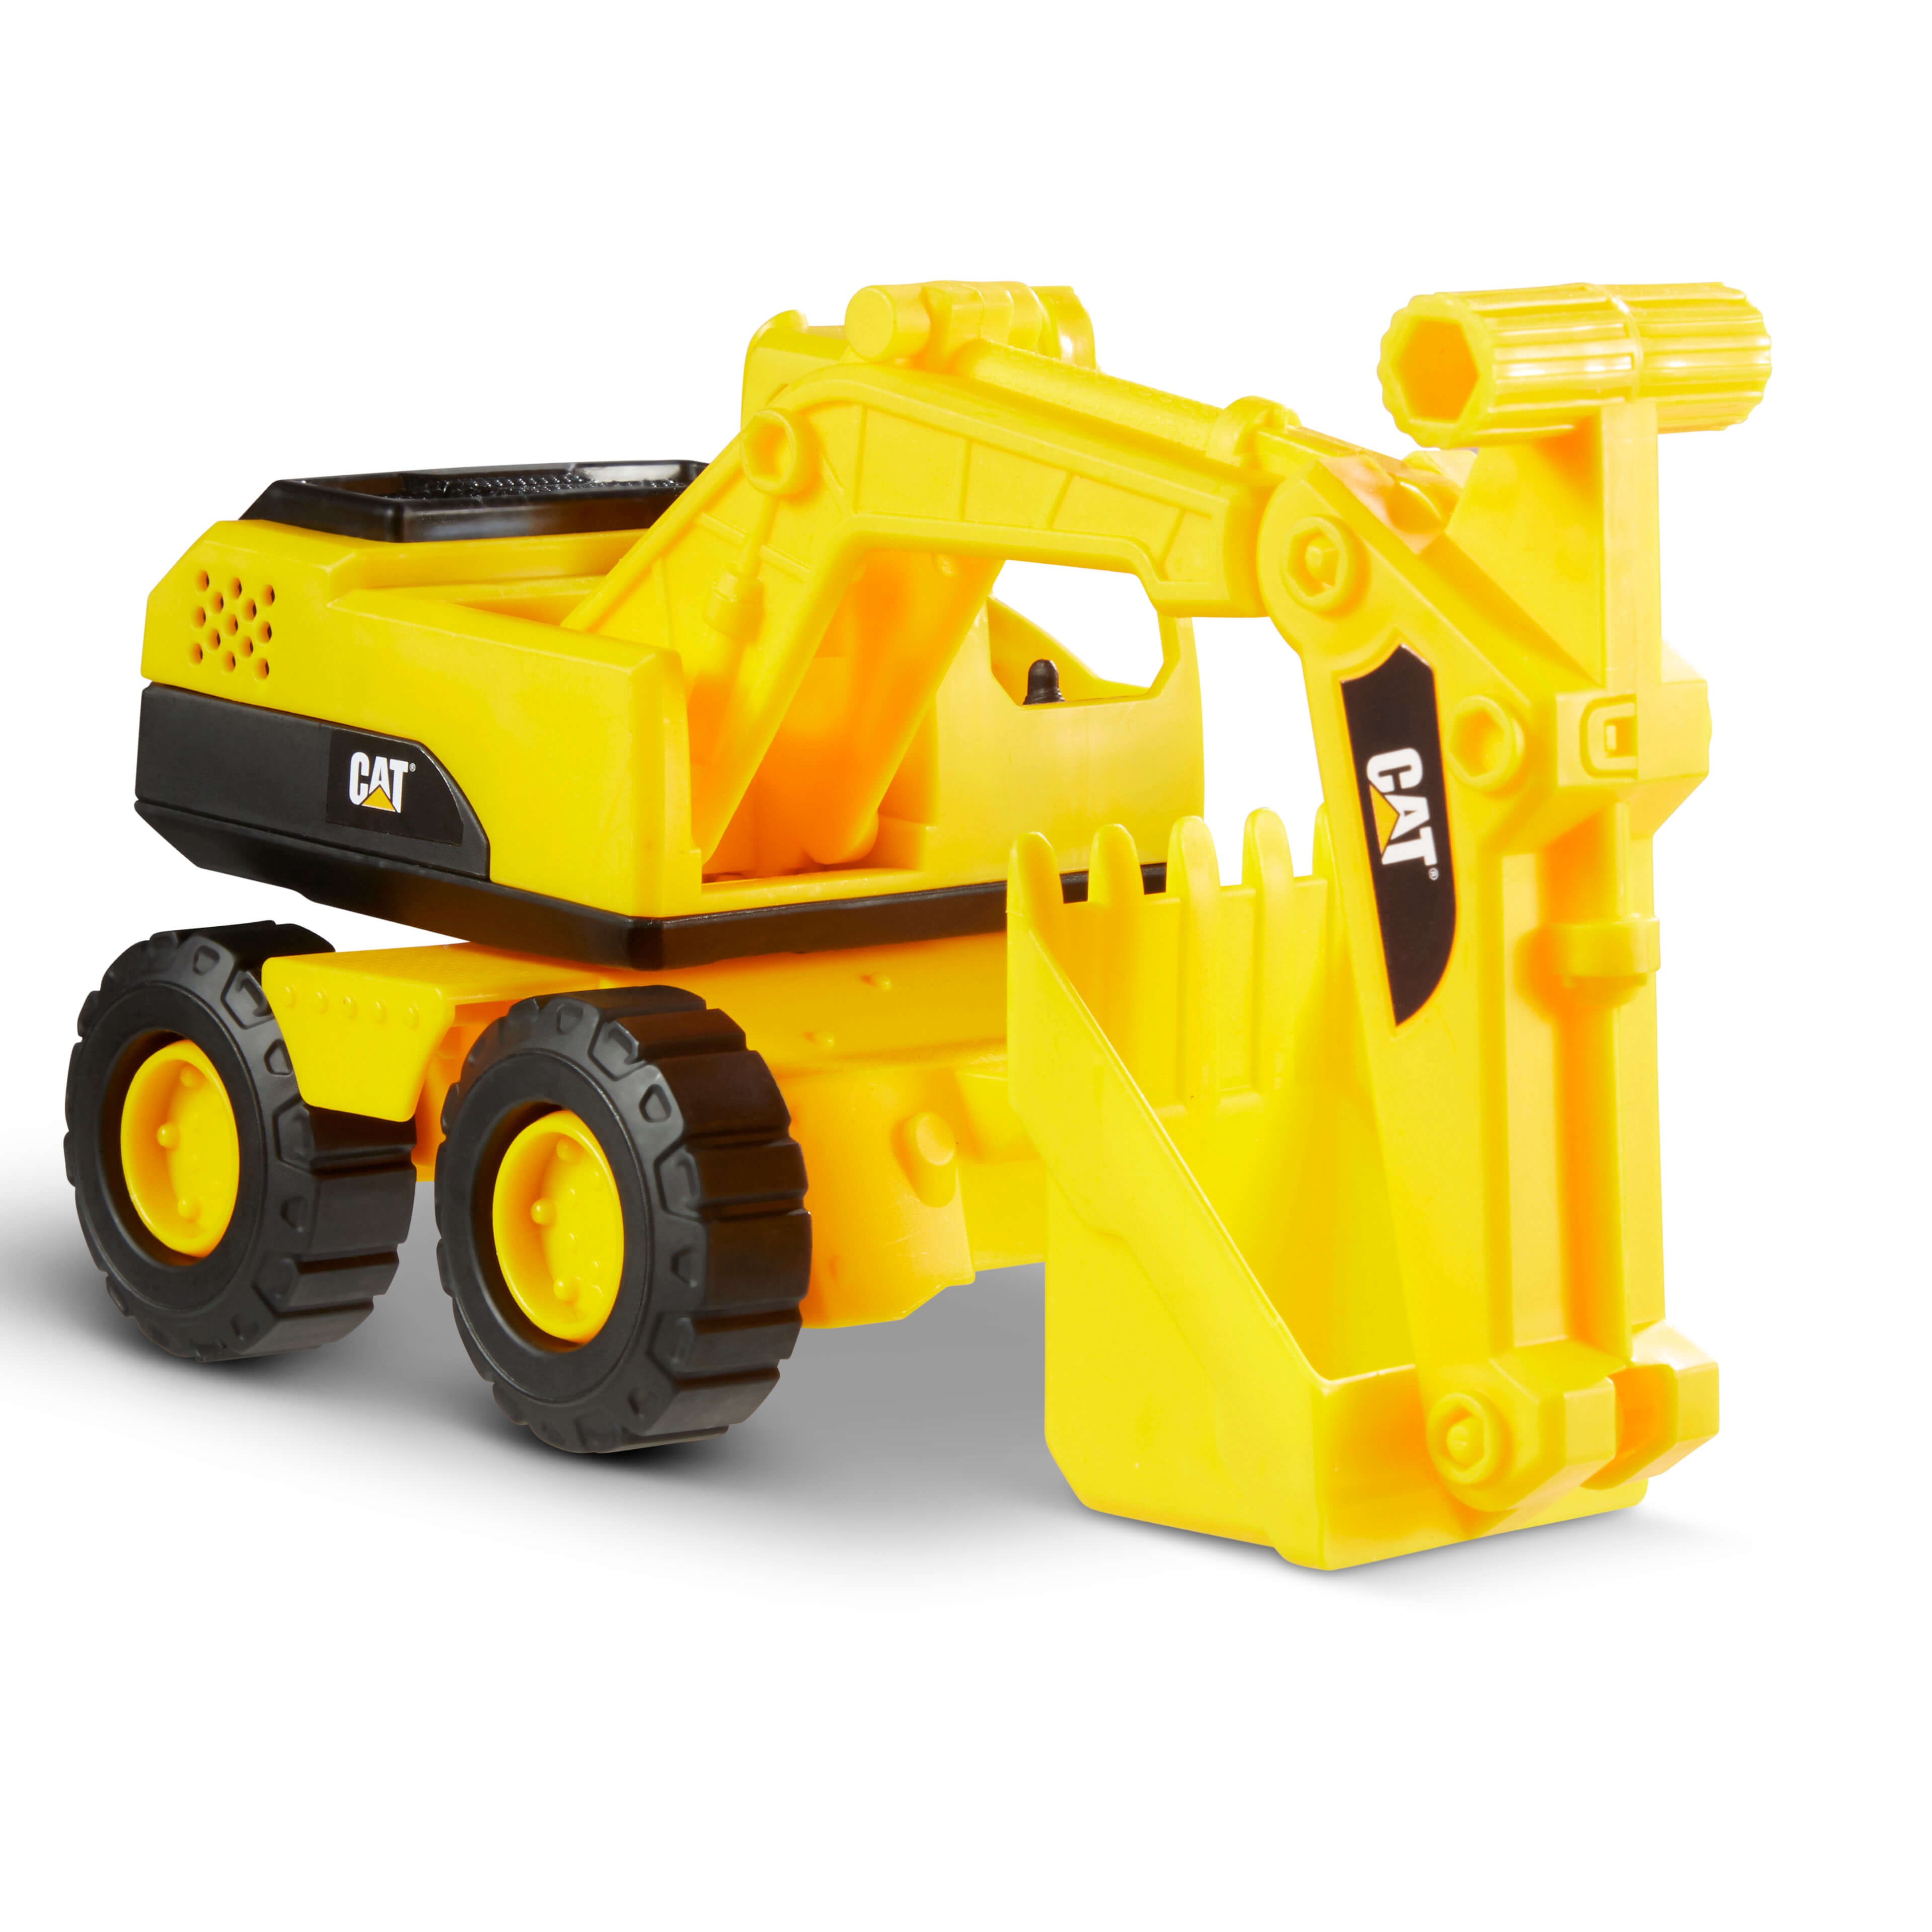 Cat - Tough Rigs Excavator (82035)